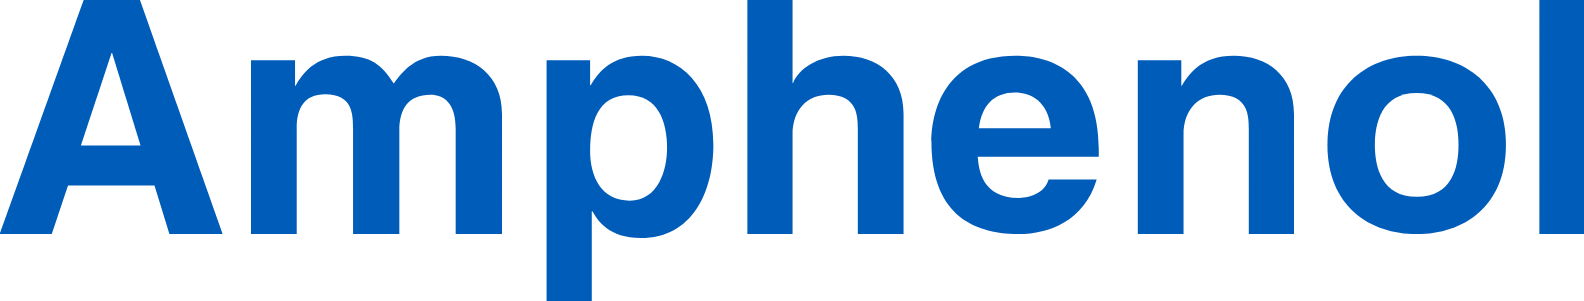 Amphenol logo large (transparent PNG)